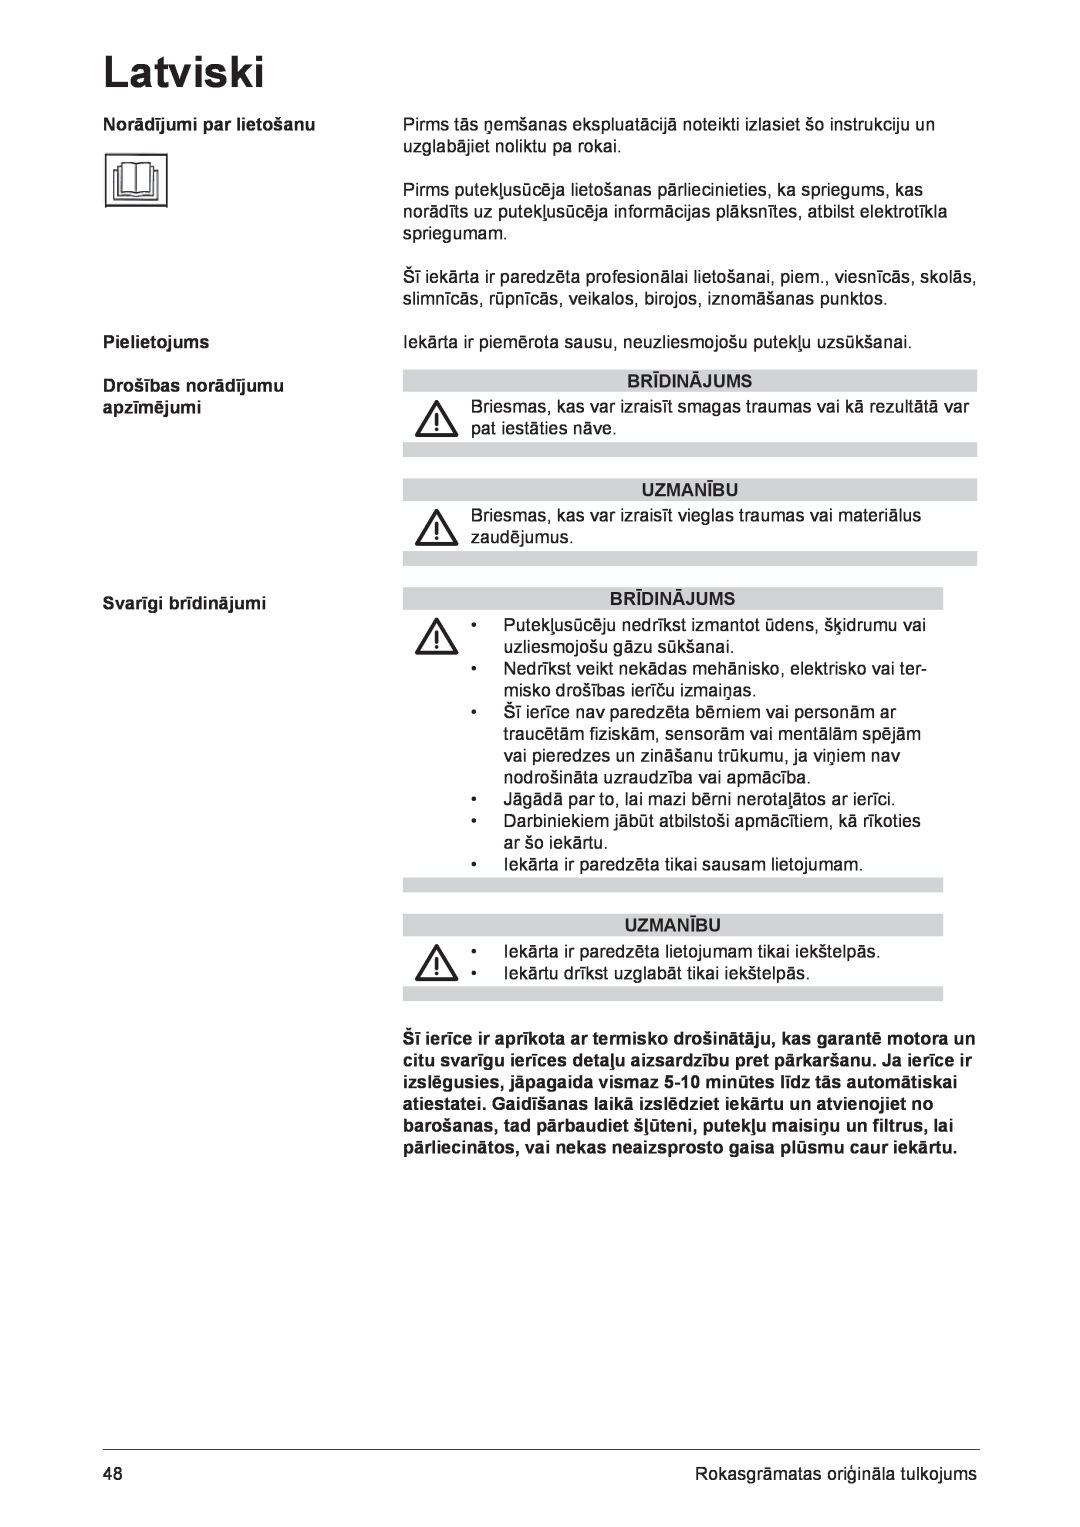 Nilfisk-ALTO GD 910 Norādījumi par lietošanu Pielietojums, Drošības norādījumu apzīmējumi, Svarīgi brīdinājumi, Uzmanību 